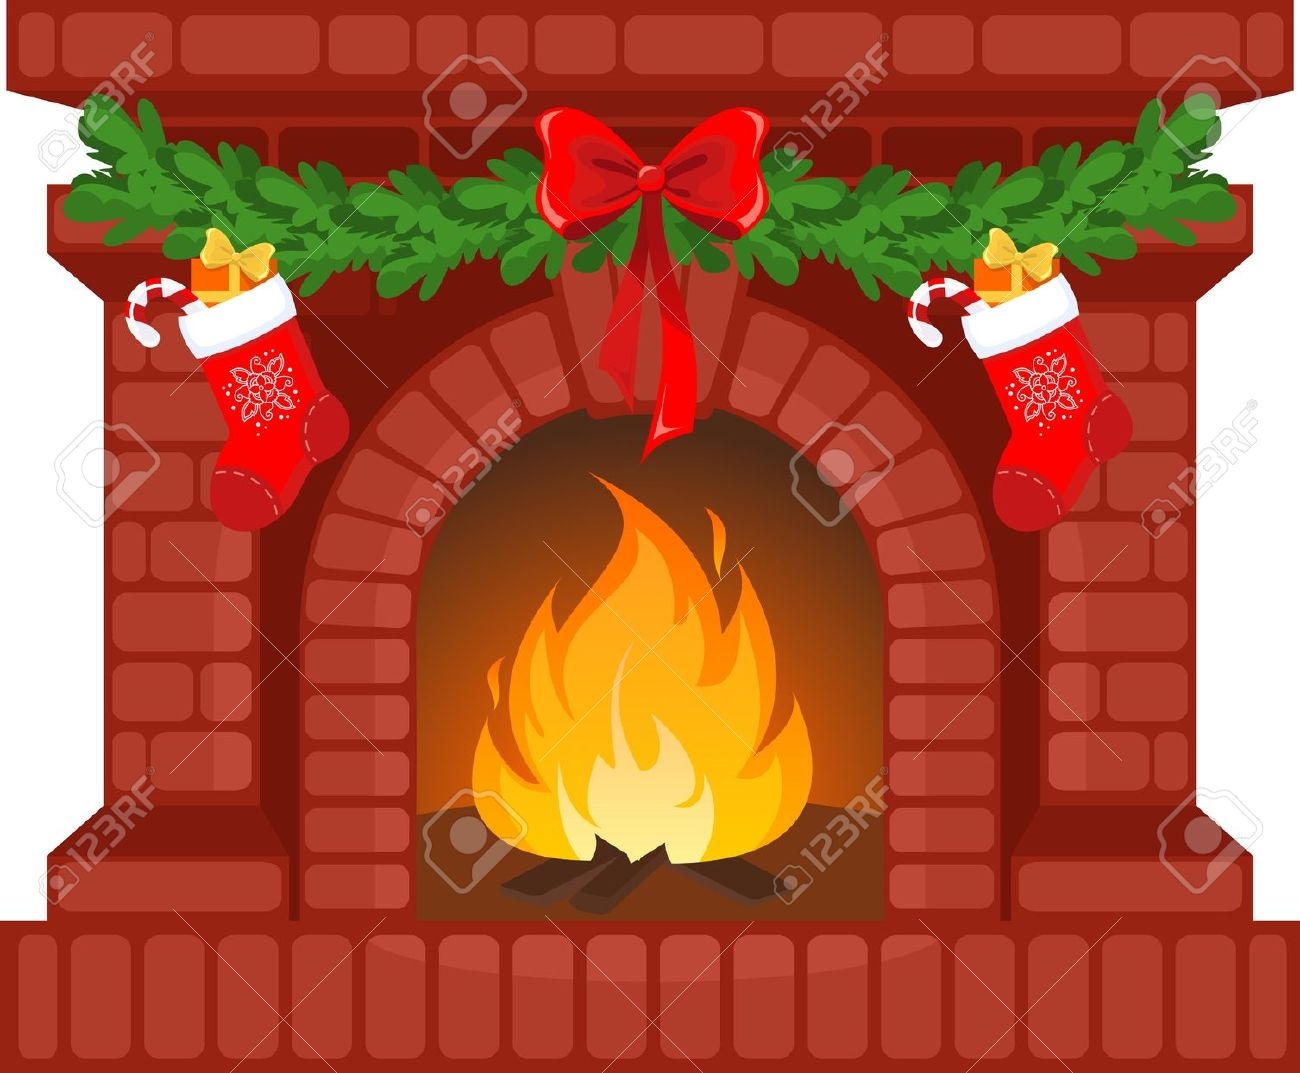 1d53b84b6314e59cf8c3f246f6004 - Christmas Fireplace Clipart